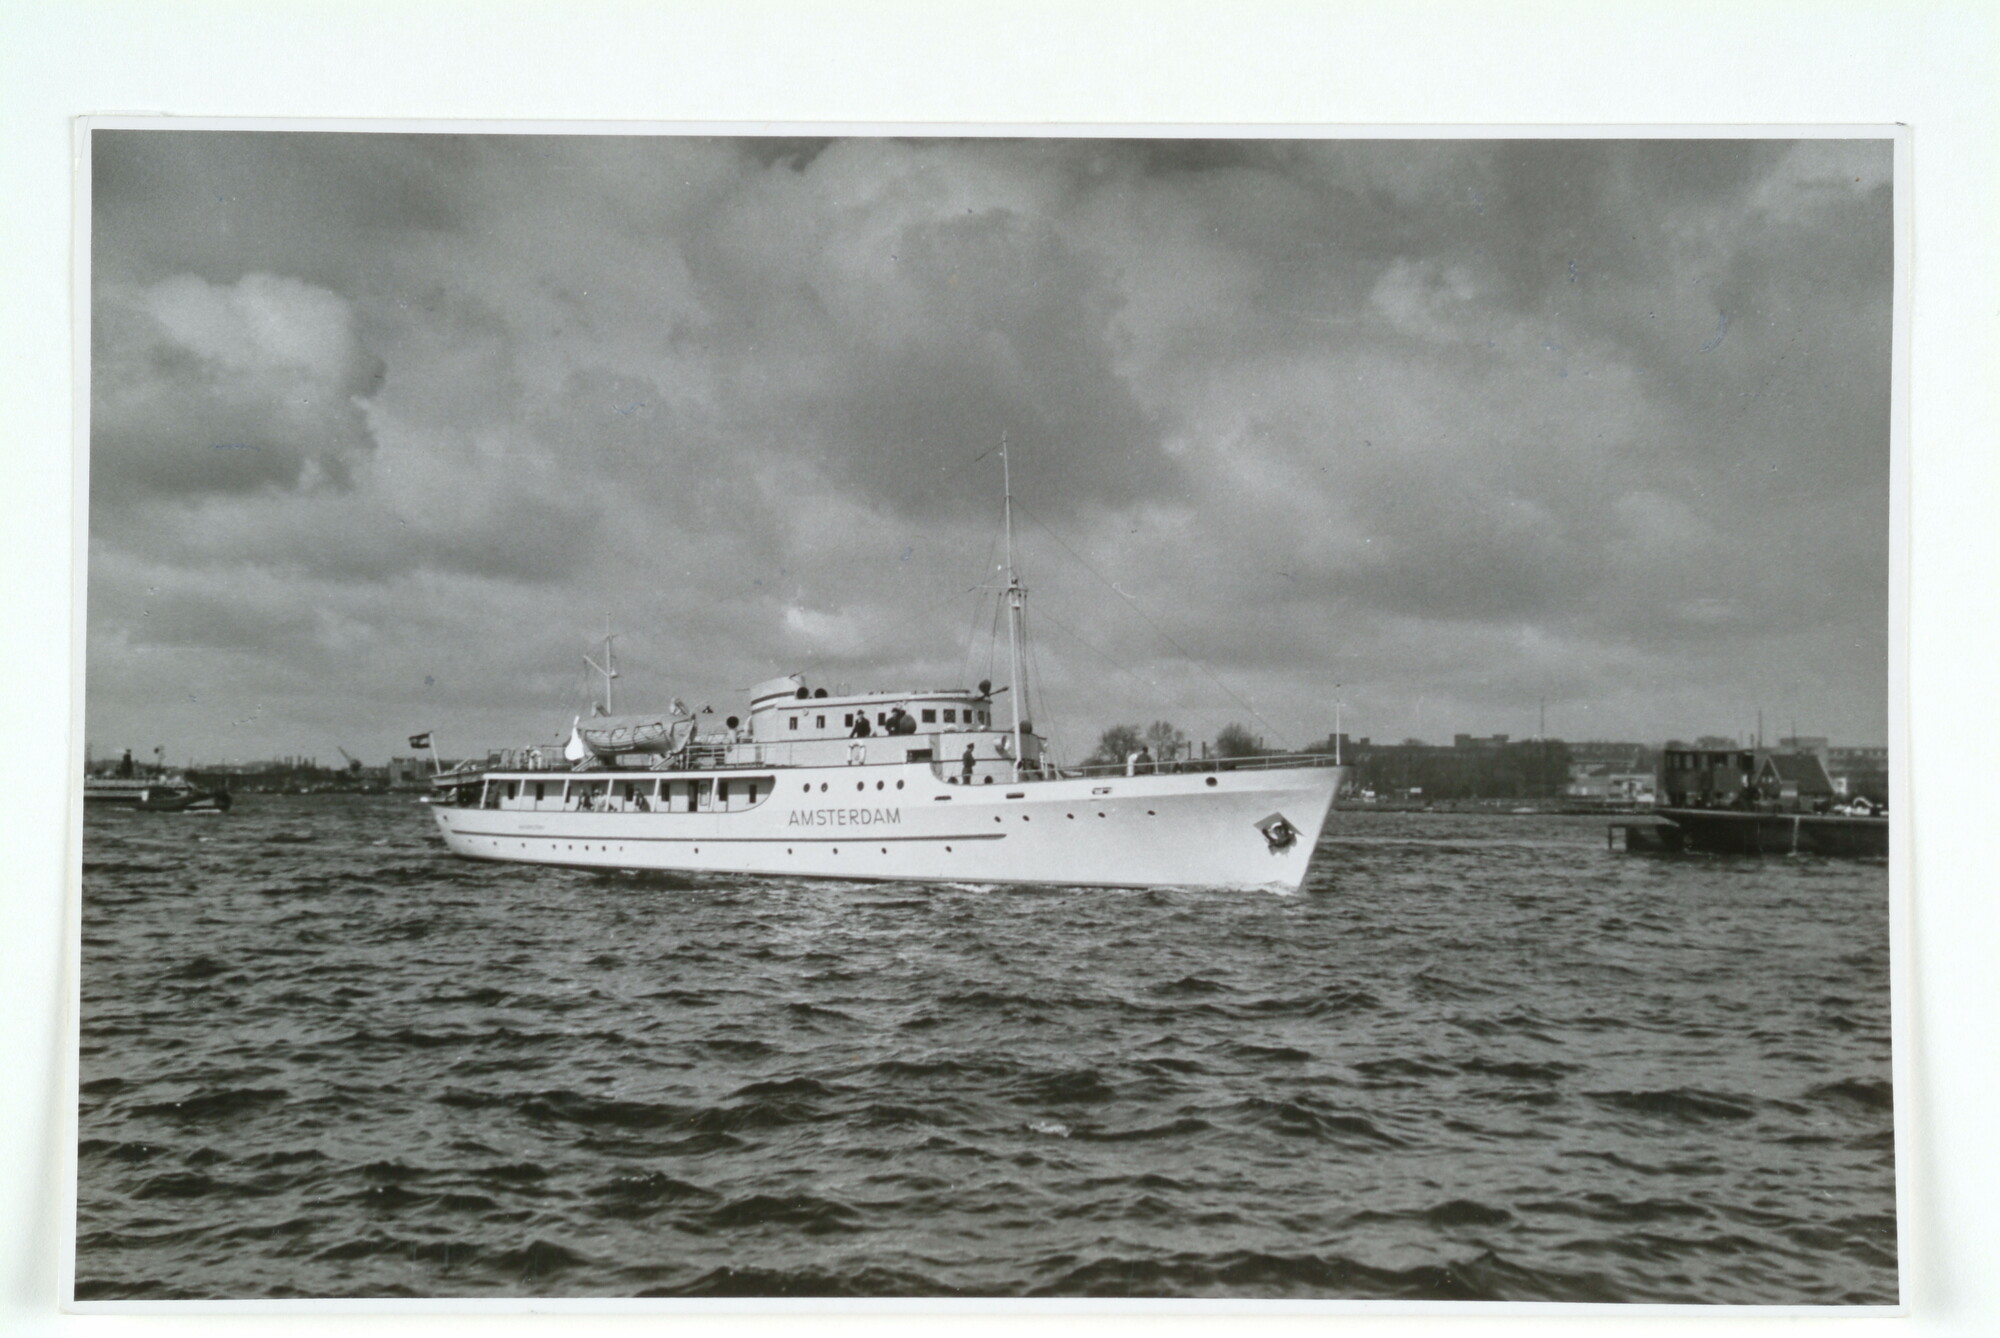 1998.2129; Het motorschip "Van der Steng" van het Comité 'Onze Marine' vertrekt onder de tijdelijke naam "Amsterdam" uit Amsterdam tijdens een promotiereis voor de Gemeente Amsterdam via de Rijn naar Bazel in 1951; foto